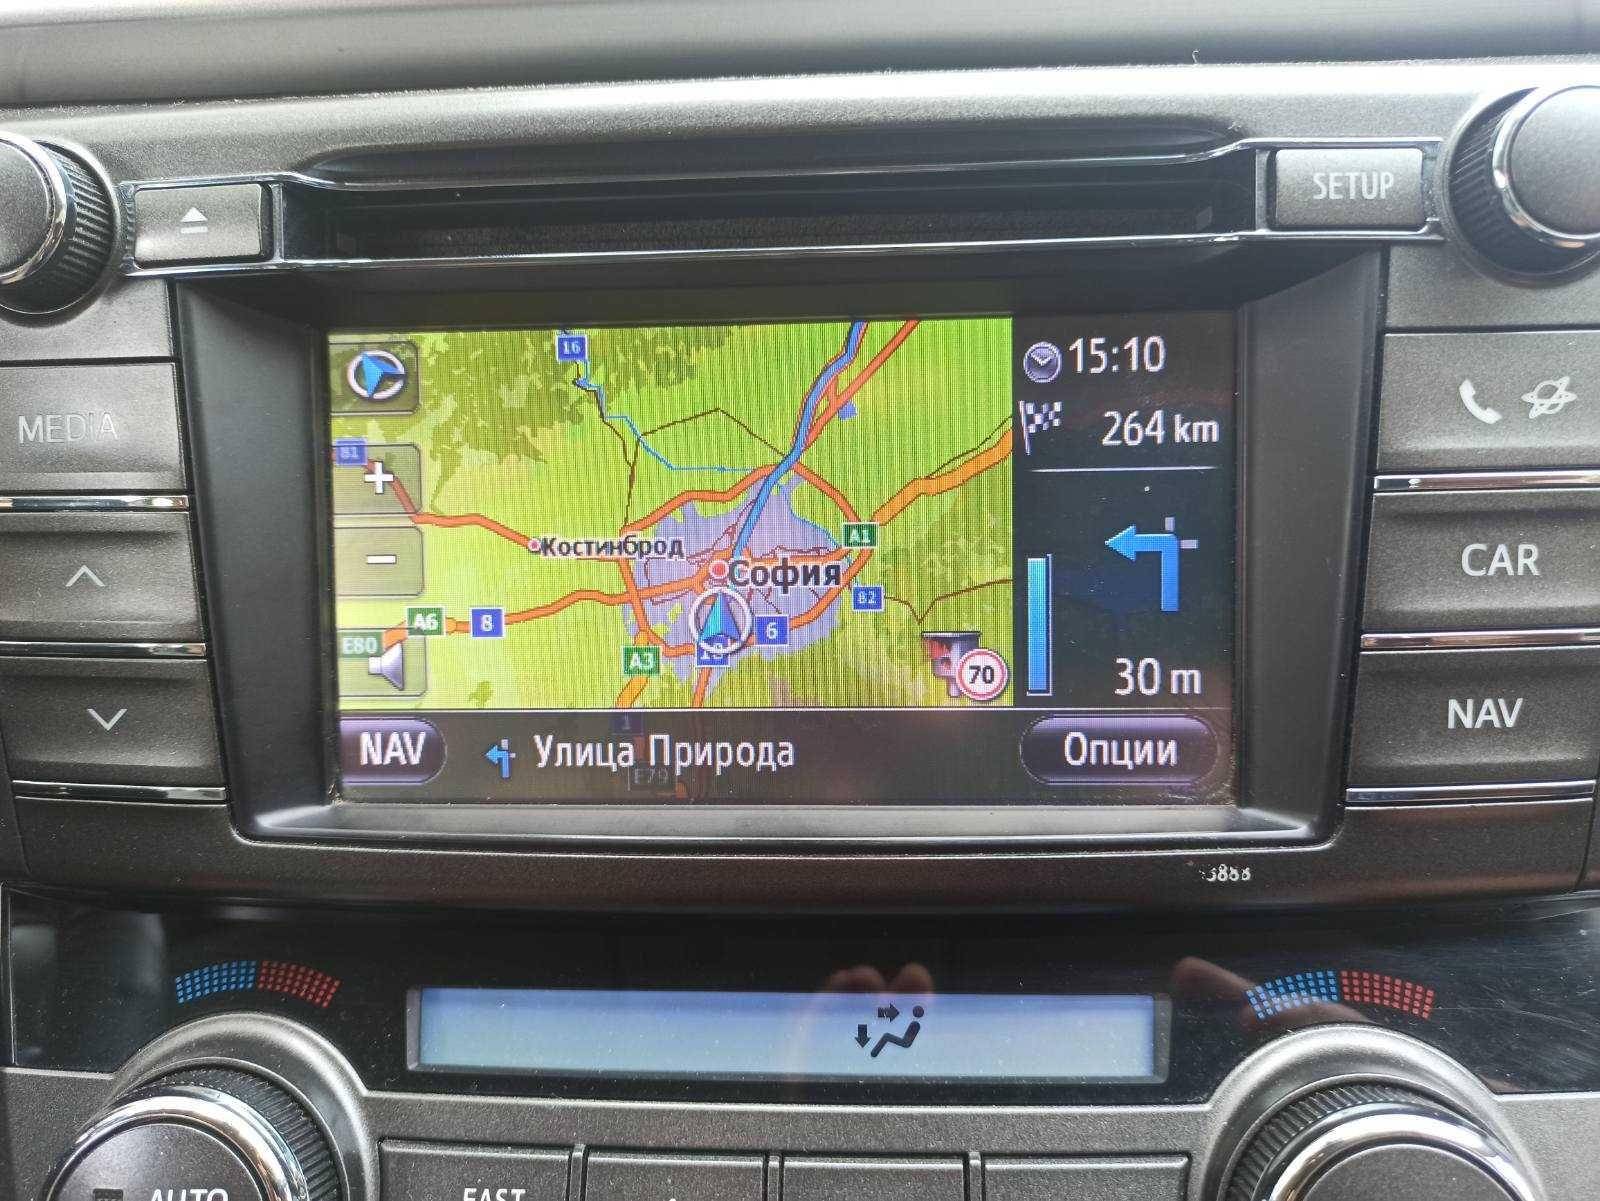 2024 карти Toyota Touch & Go ъпдейт навигация Тойота чрез USB + код